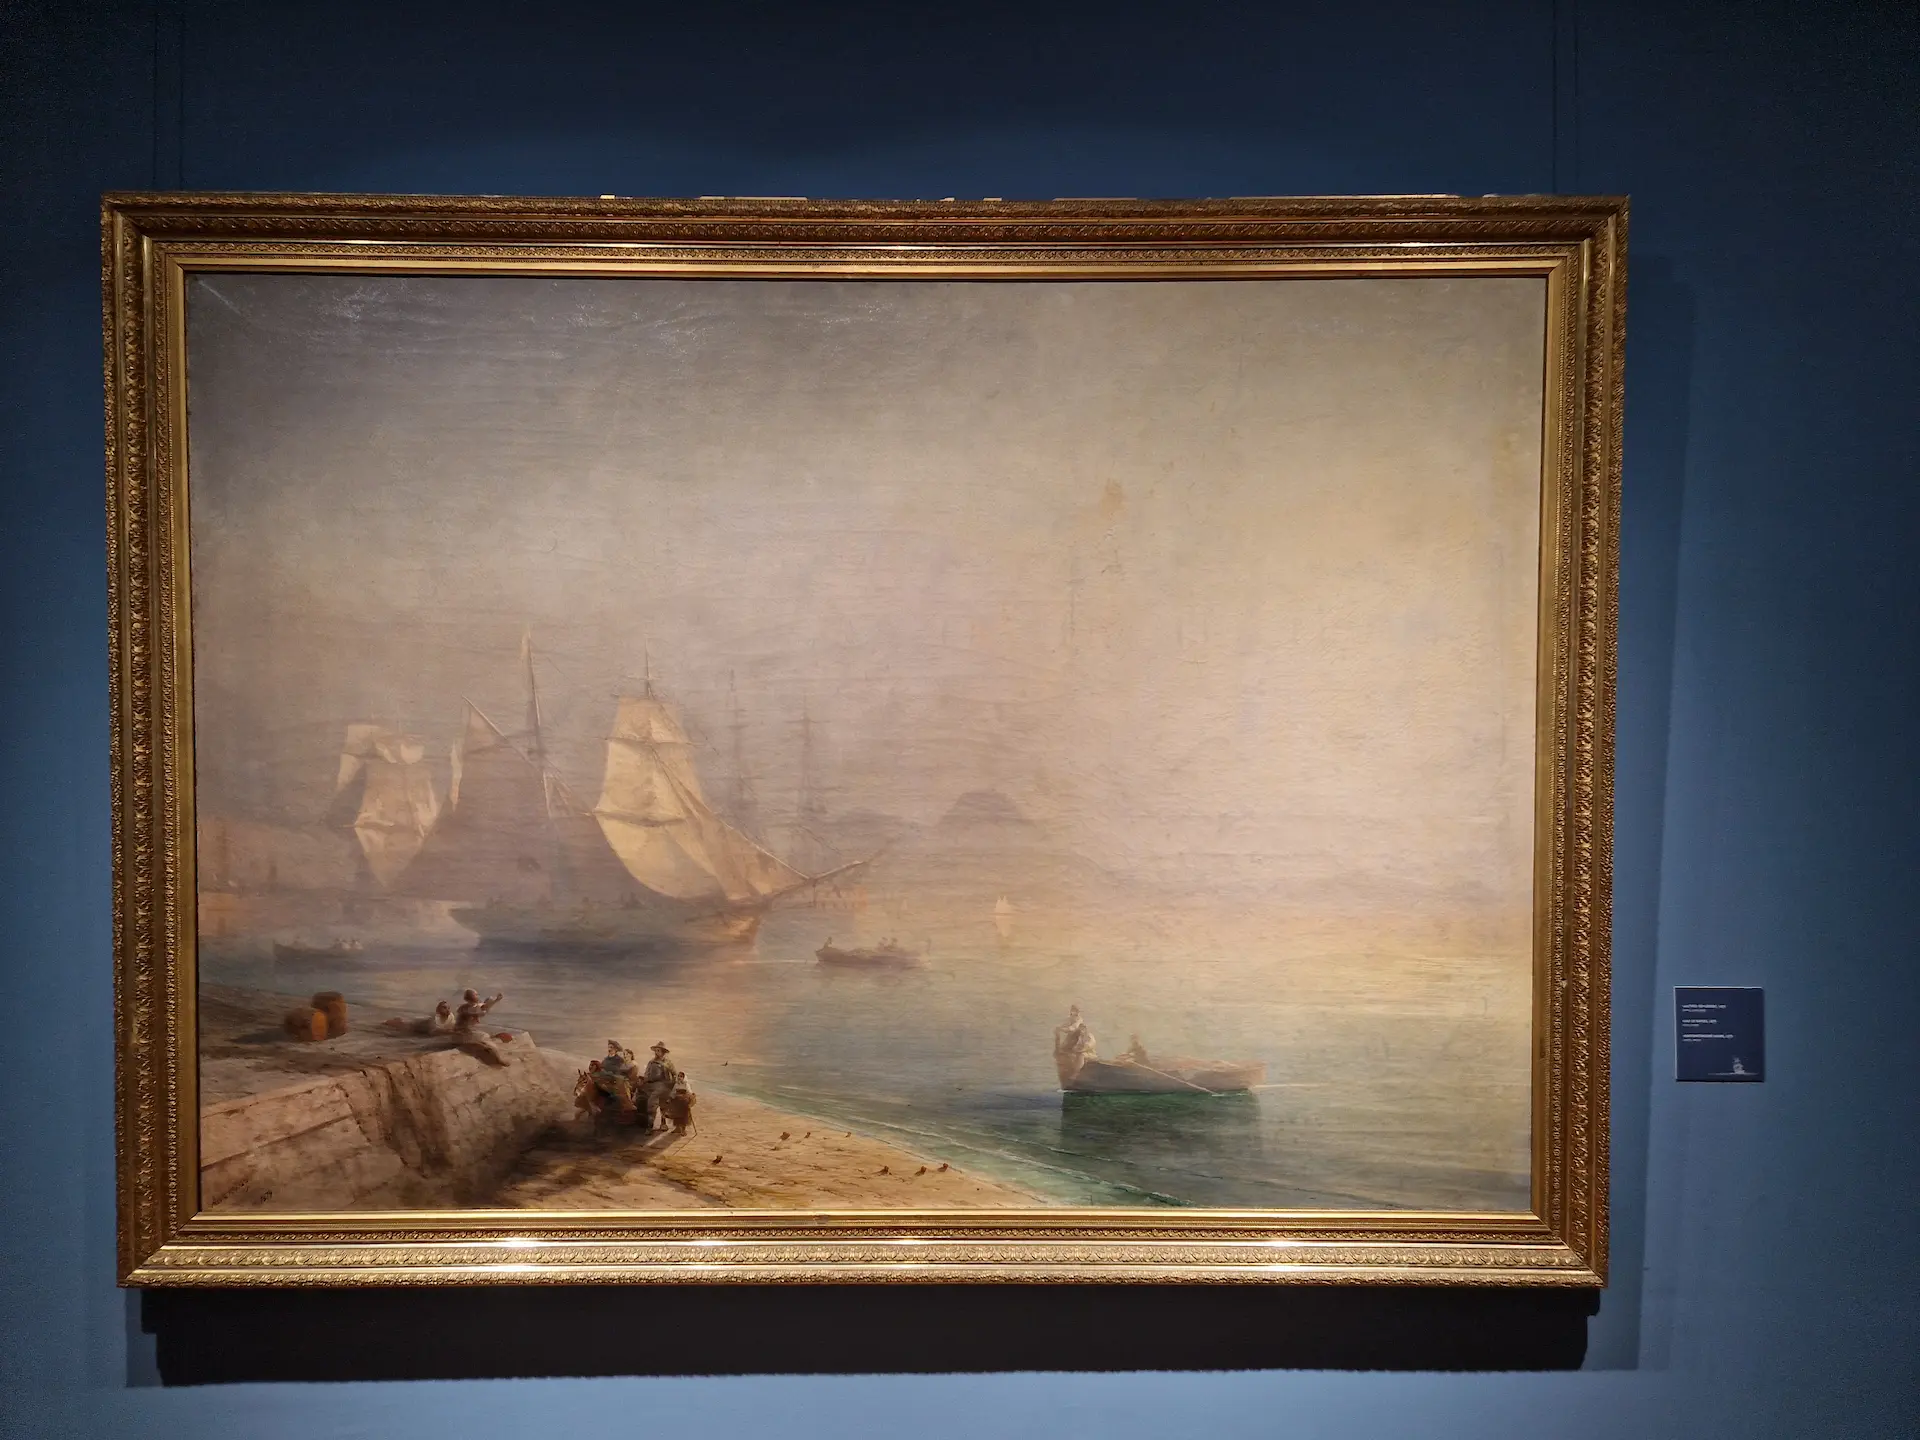 Peinture réaliste de la mer vue du port de nice, il y a du brouillard, on distingue des bateaux. Il y a quelques personnes sur le quai.